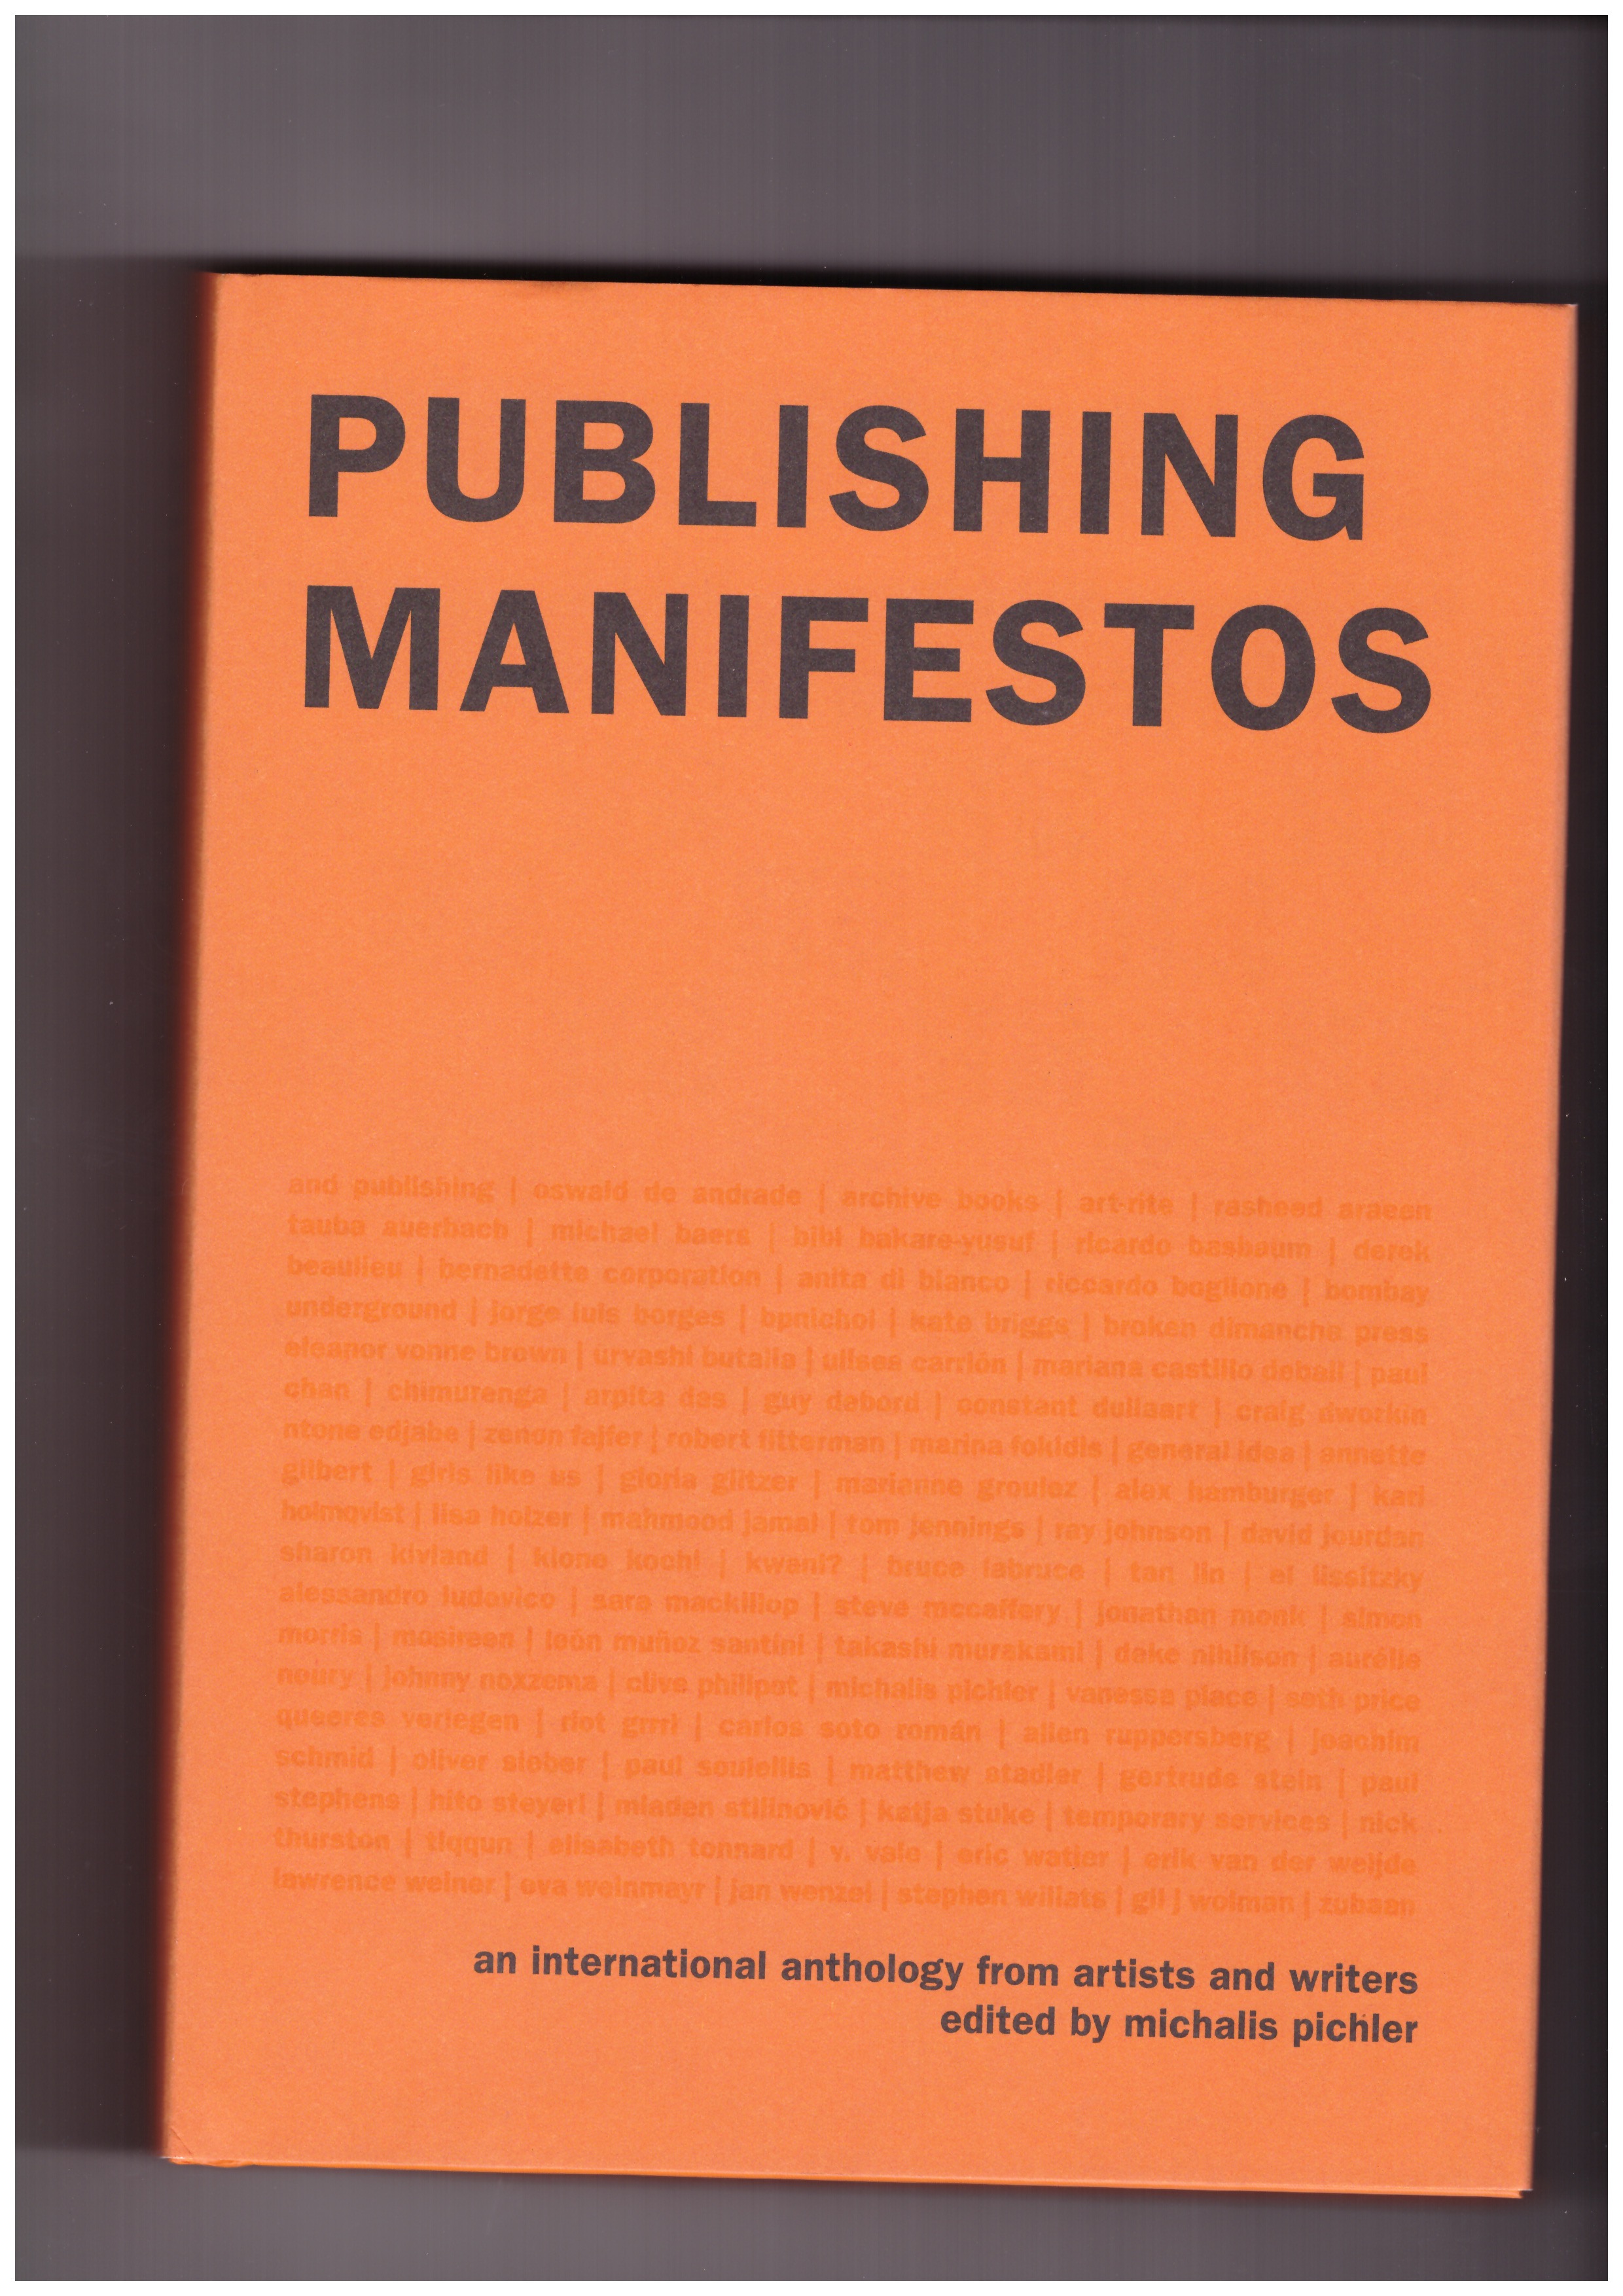 PICHLER, Michalis (ed.) - Publishing Manifestos